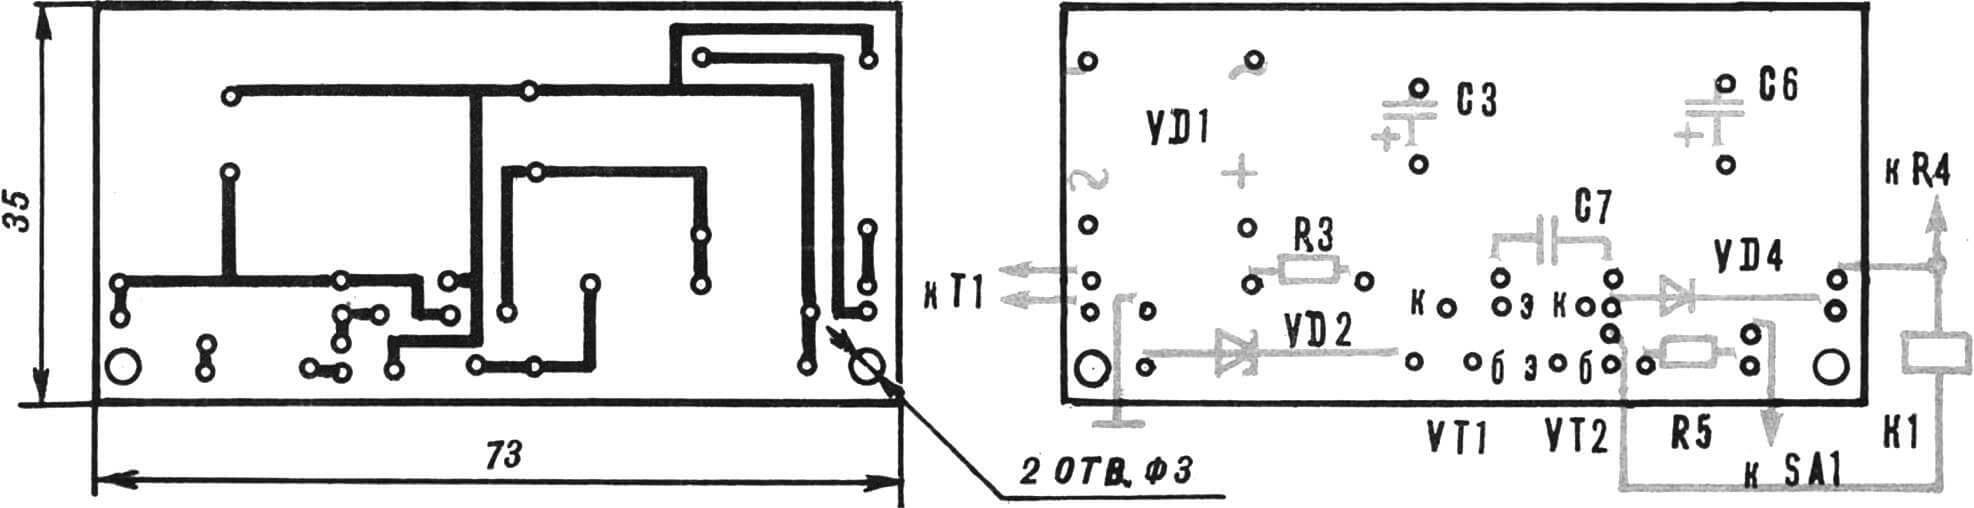 Рис. 6. Монтажная плата источника питания и транзисторного ключа со схемой расположения элементов.